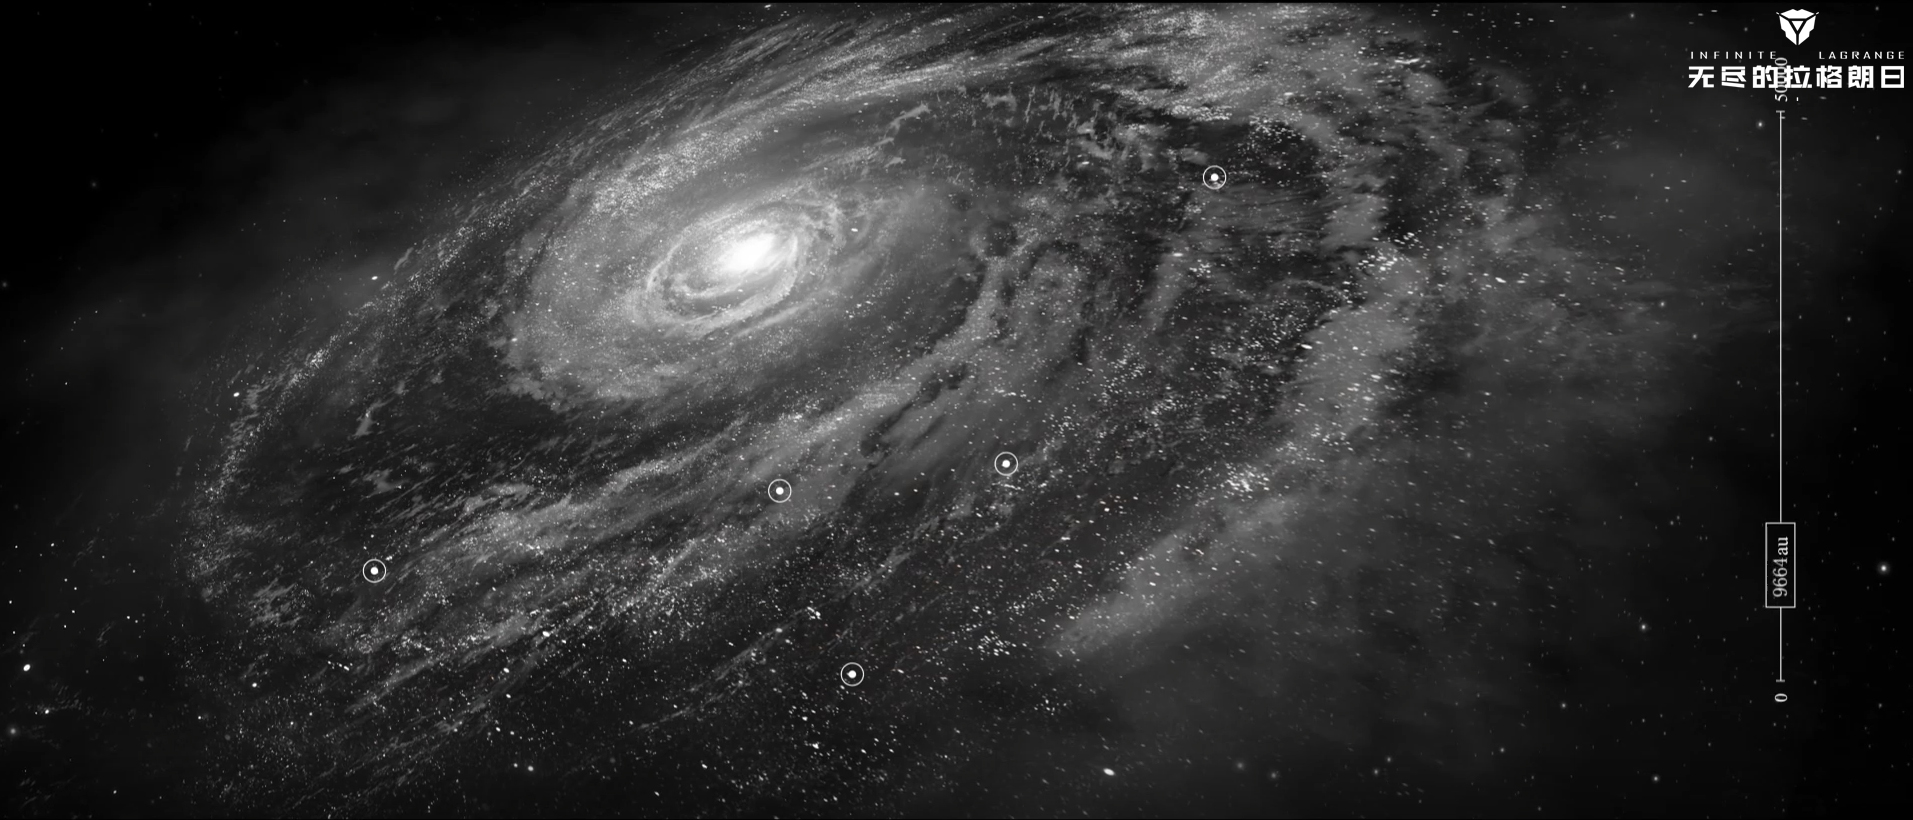 从近地球航行到穿梭银河系：《无尽的拉格朗日》中的太空探索历程